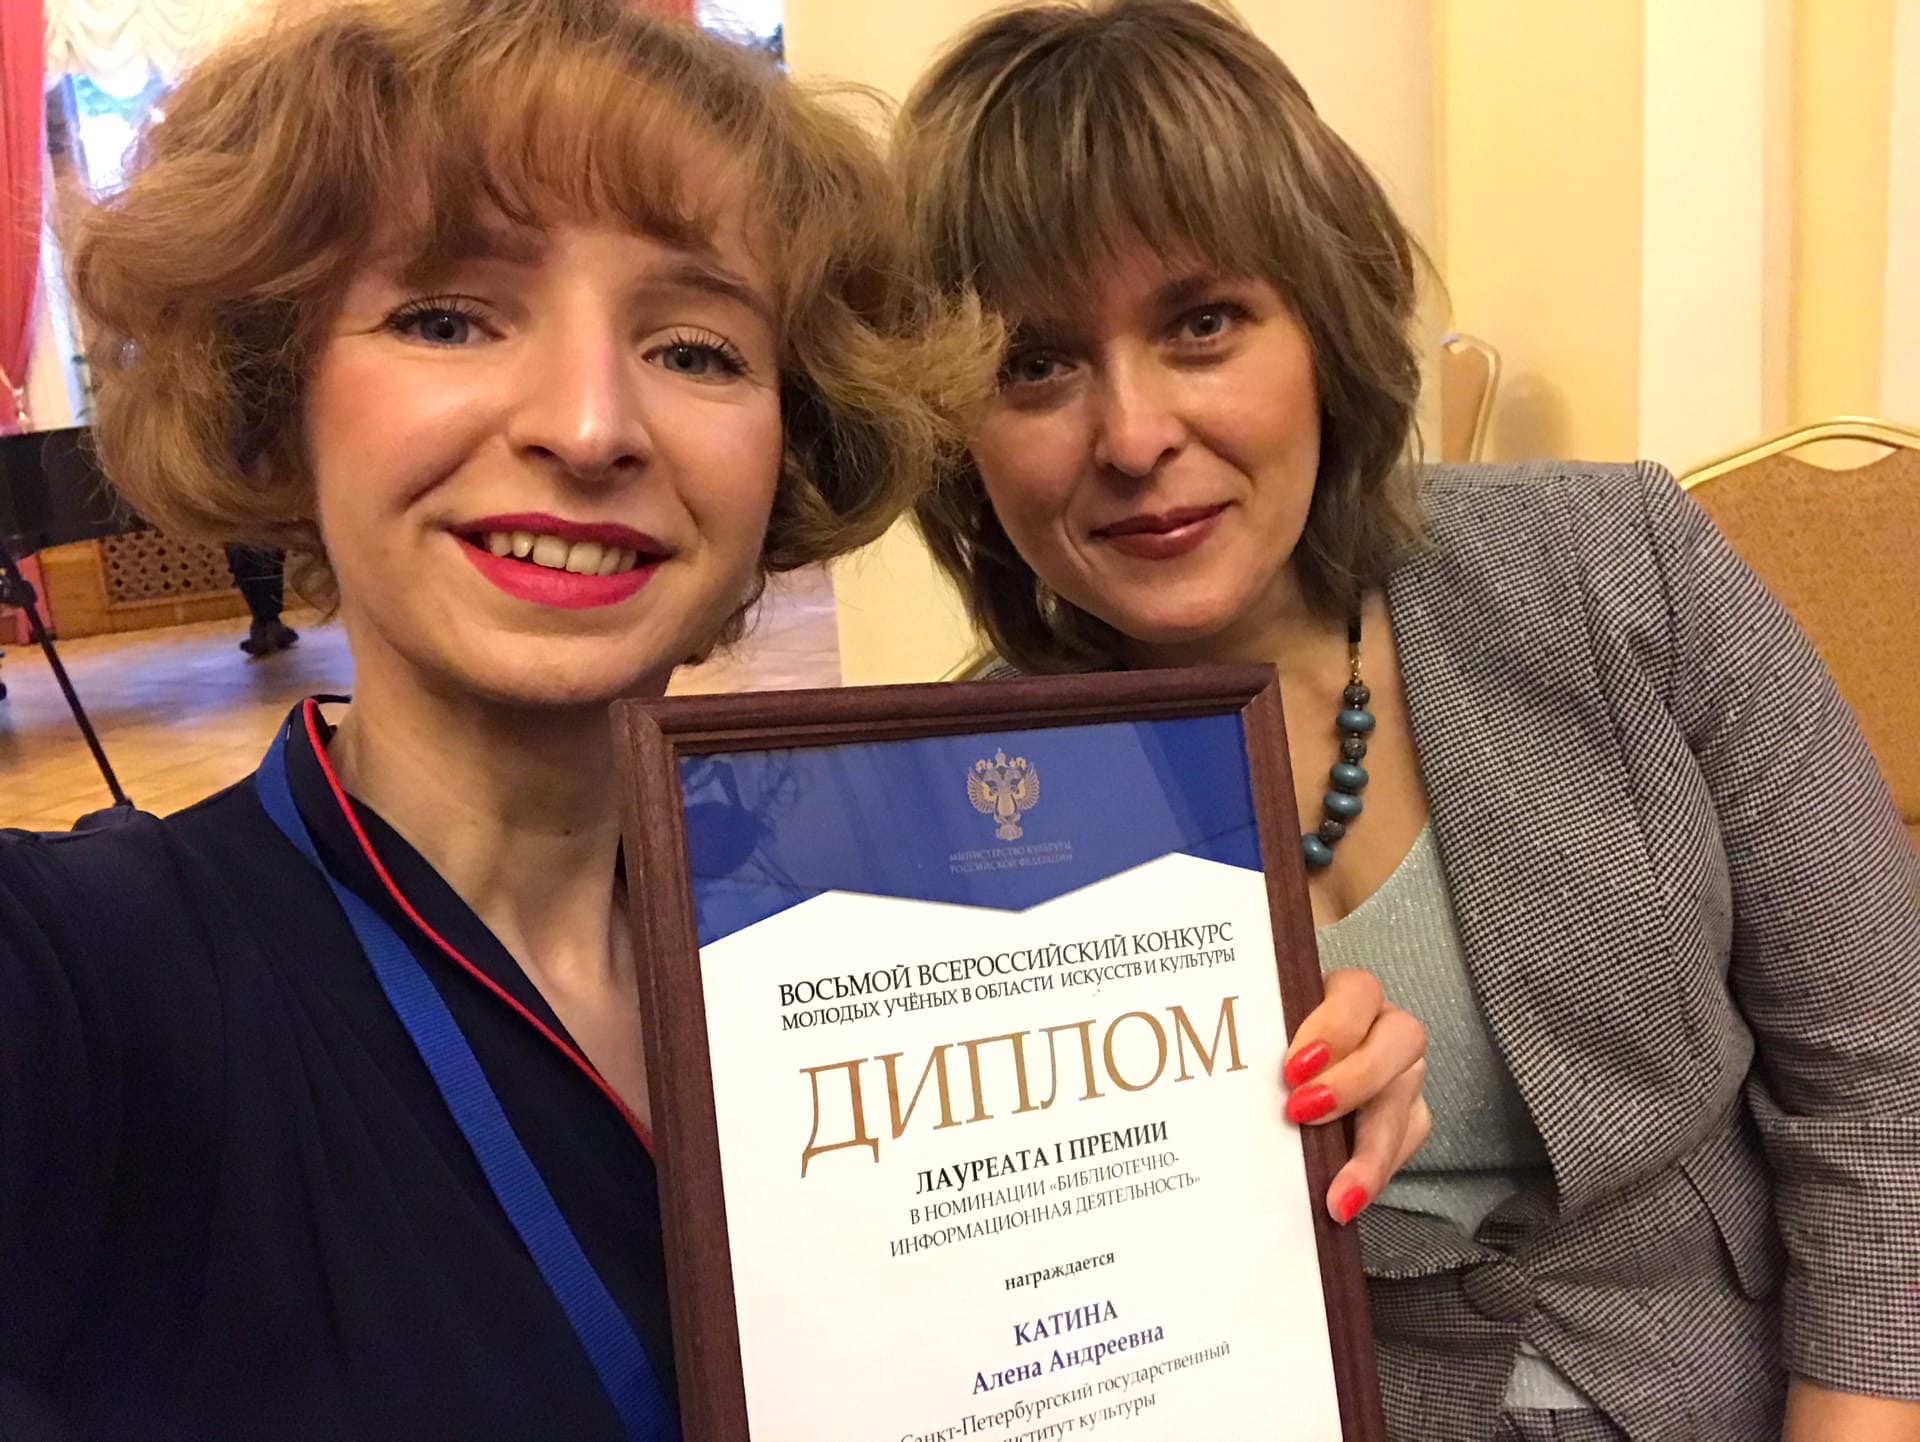 Награждение лауреатов VIII Всероссийского конкурса молодых учёных в области искусств и культуры Министерства культуры Российской Федерации